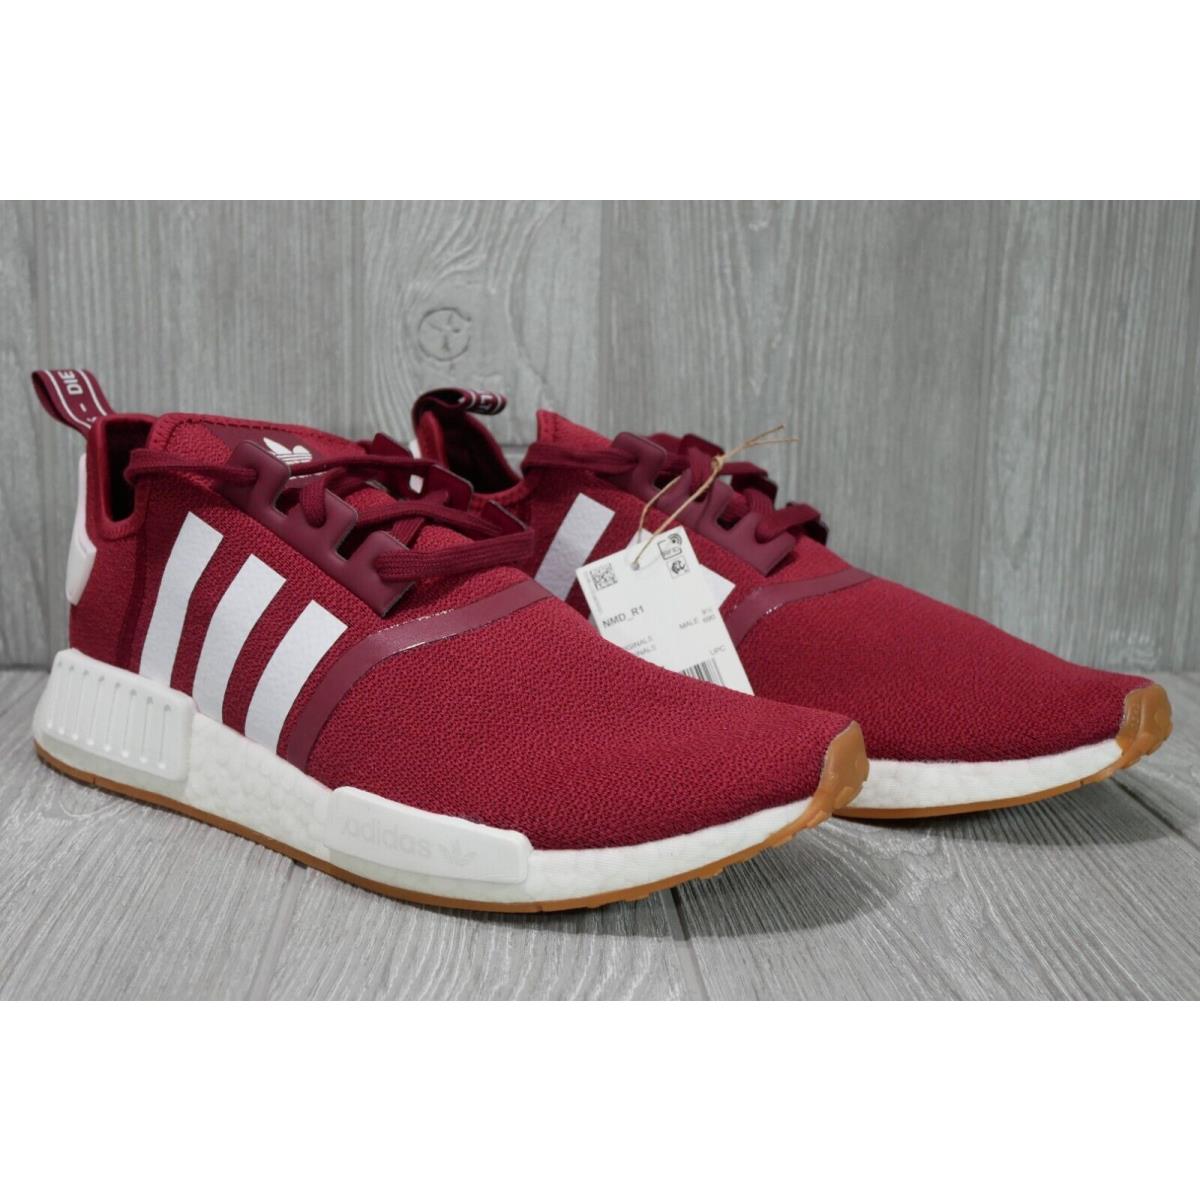 Adidas shoes Originals - Red 1